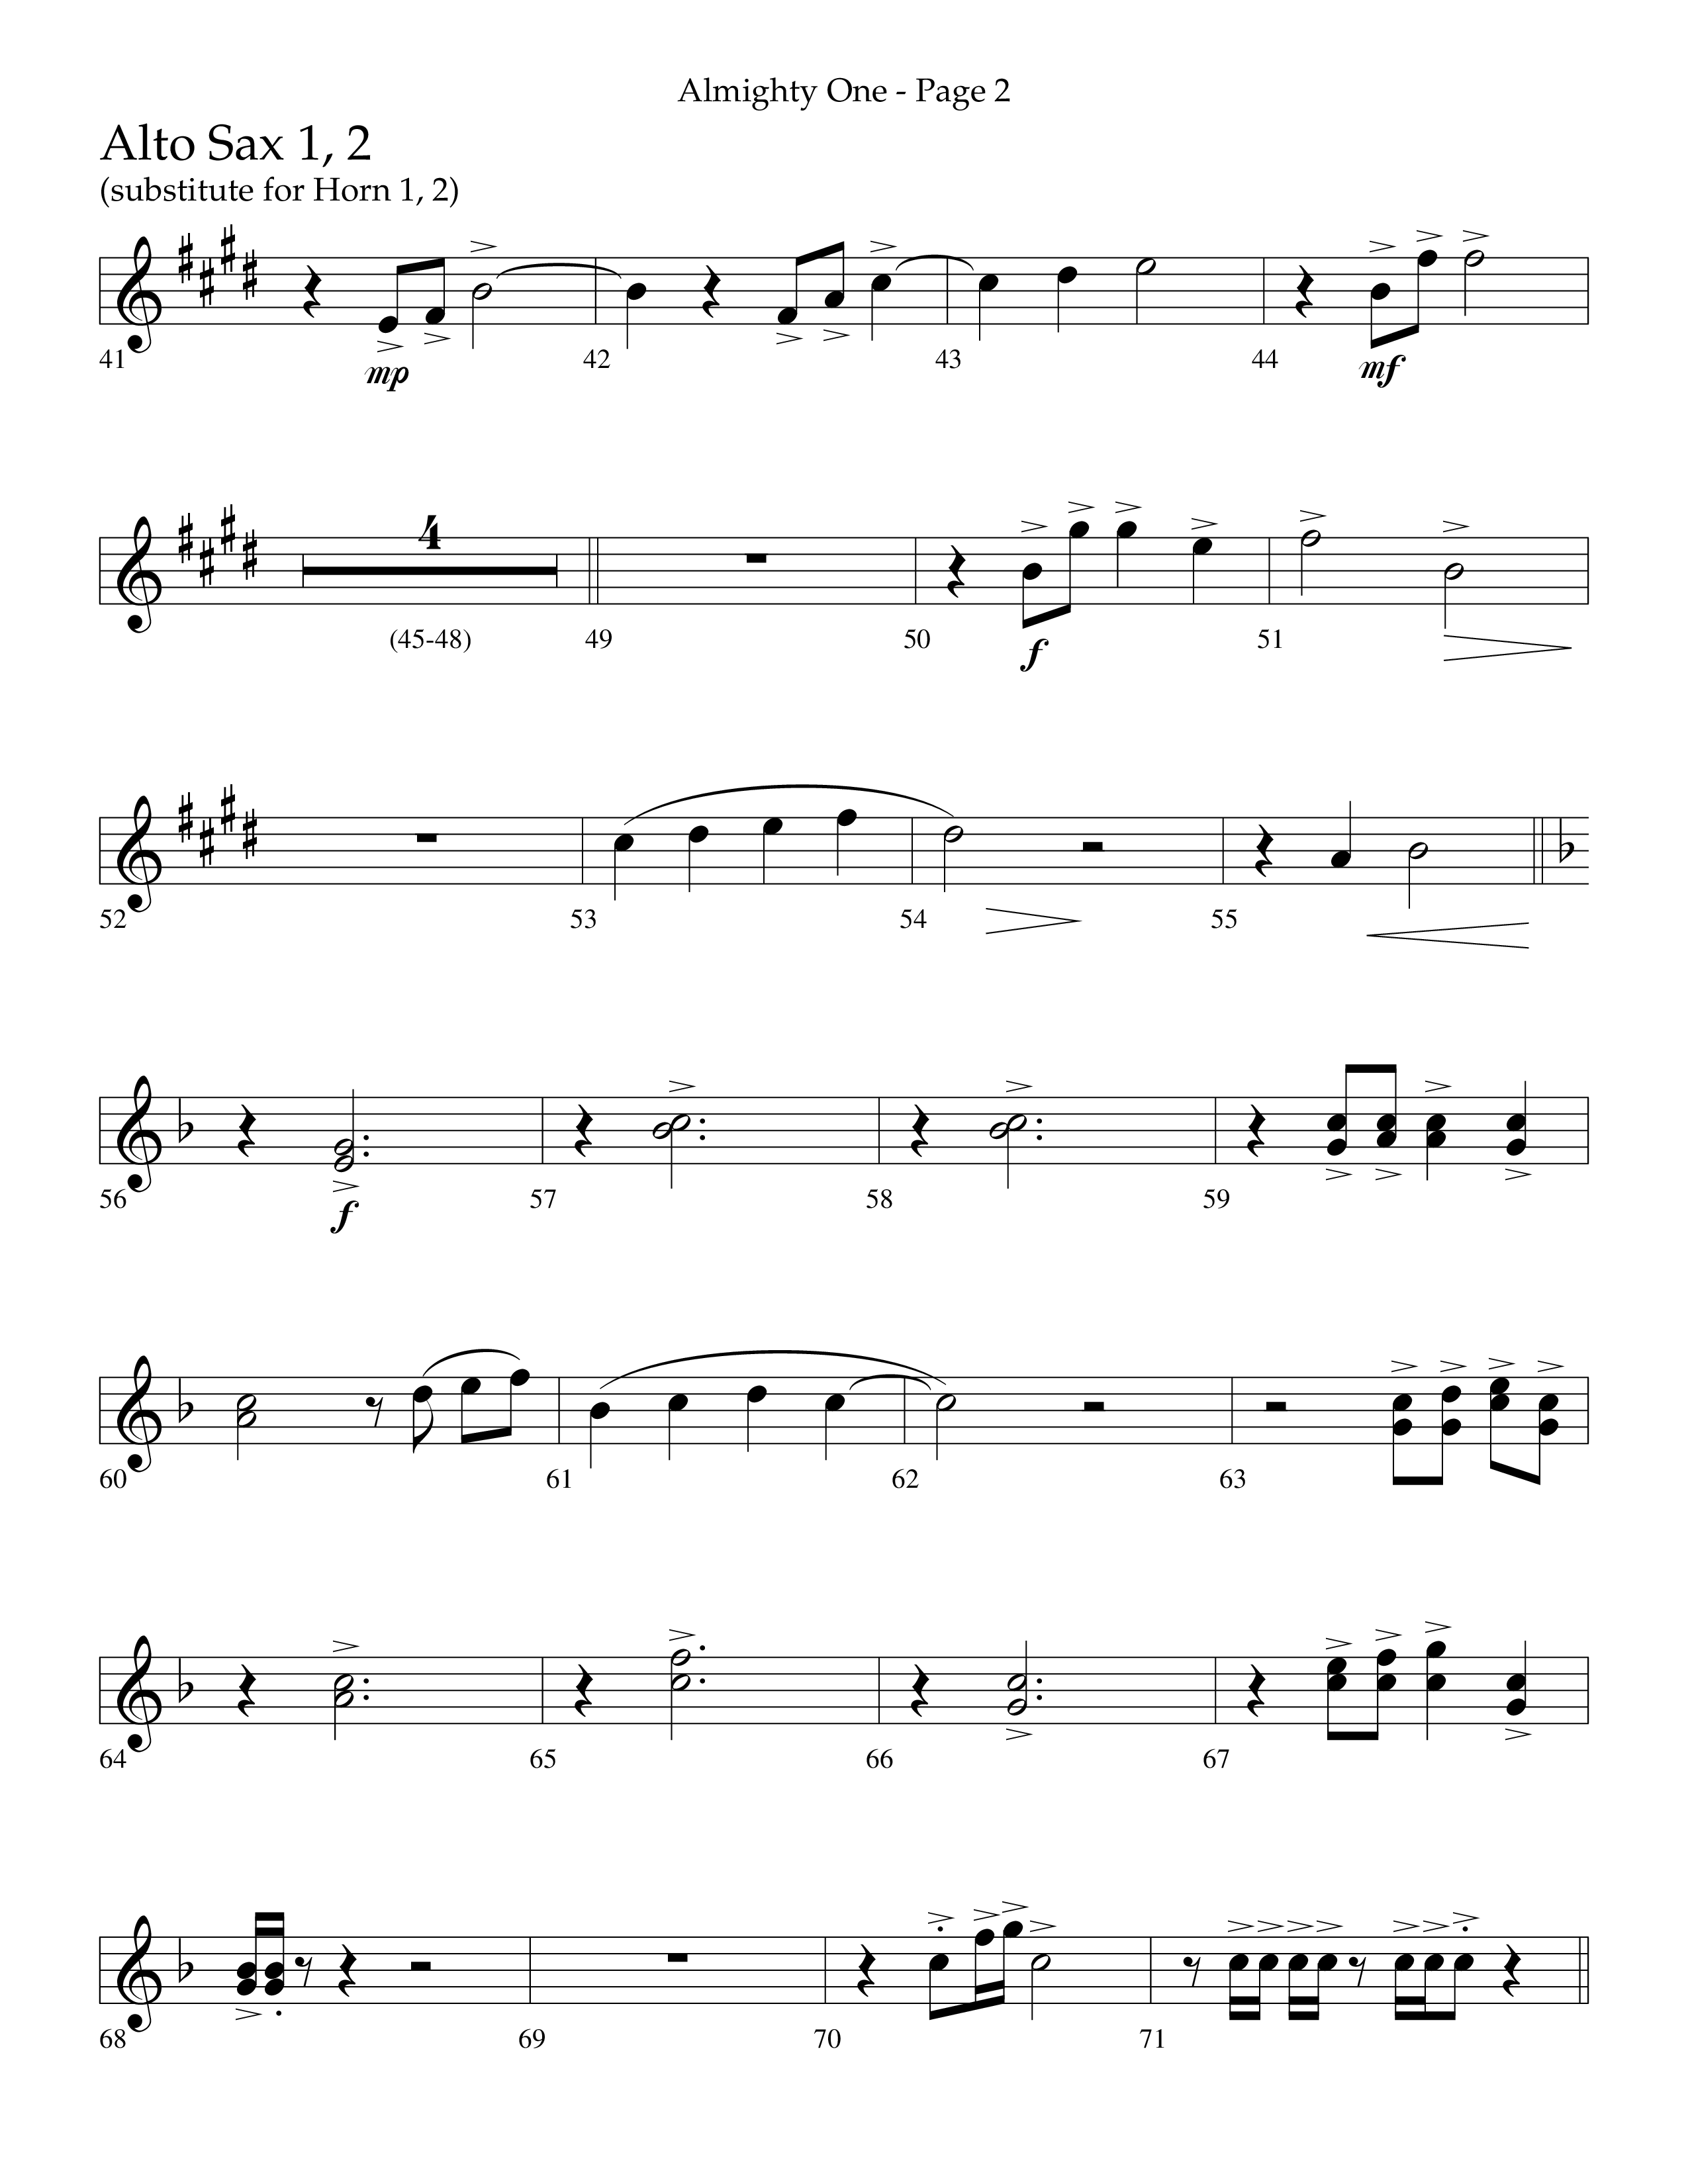 Almighty One (Choral Anthem SATB) Alto Sax 1/2 (Lifeway Choral / Arr. Bradley Knight)